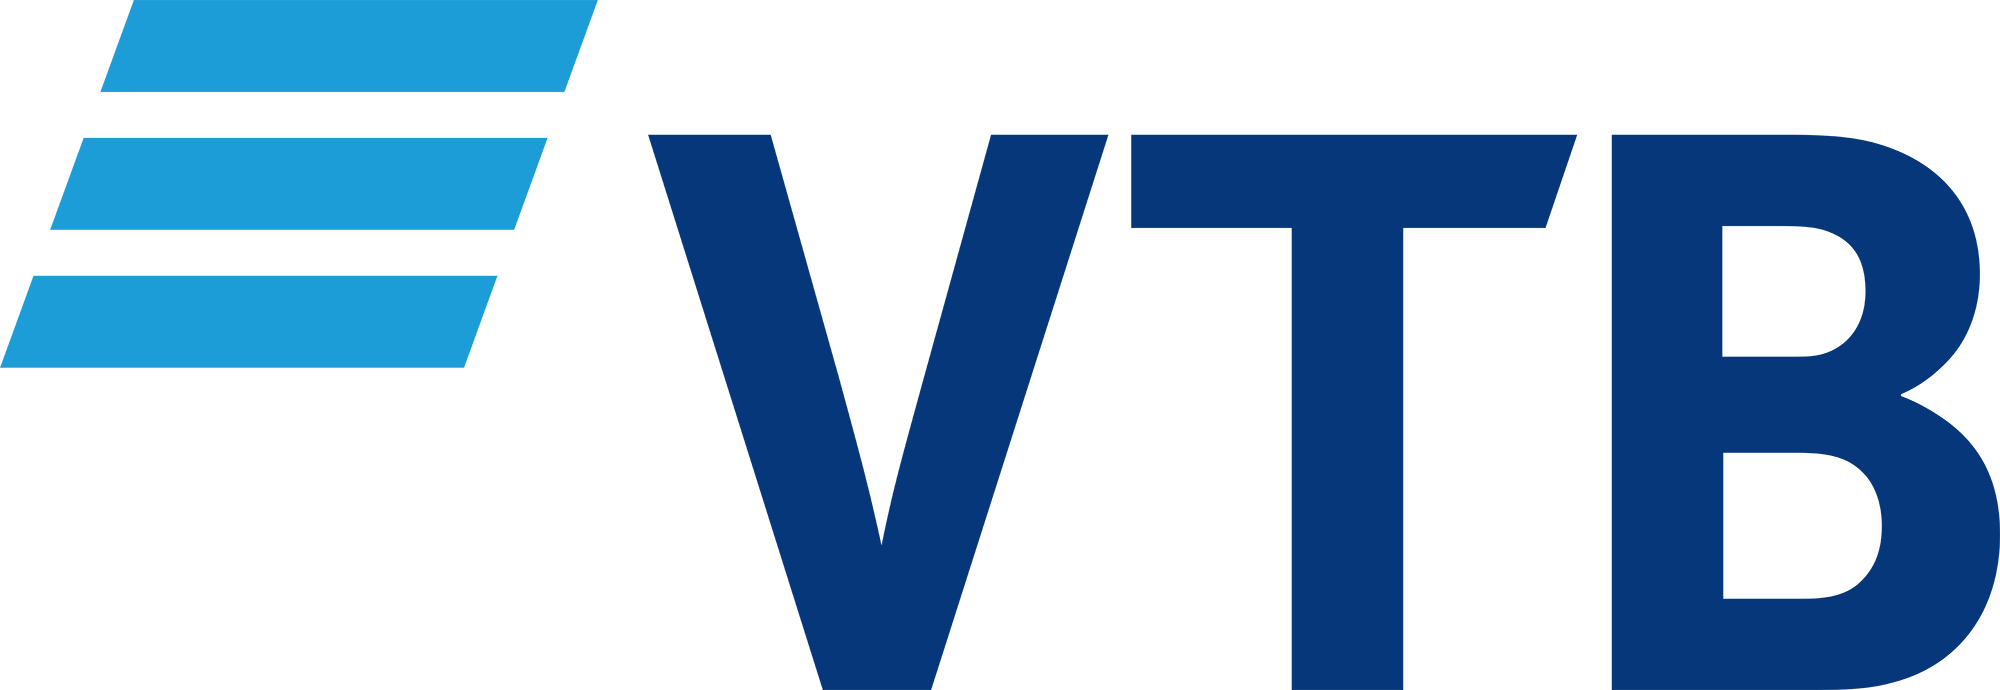 vtb-logo